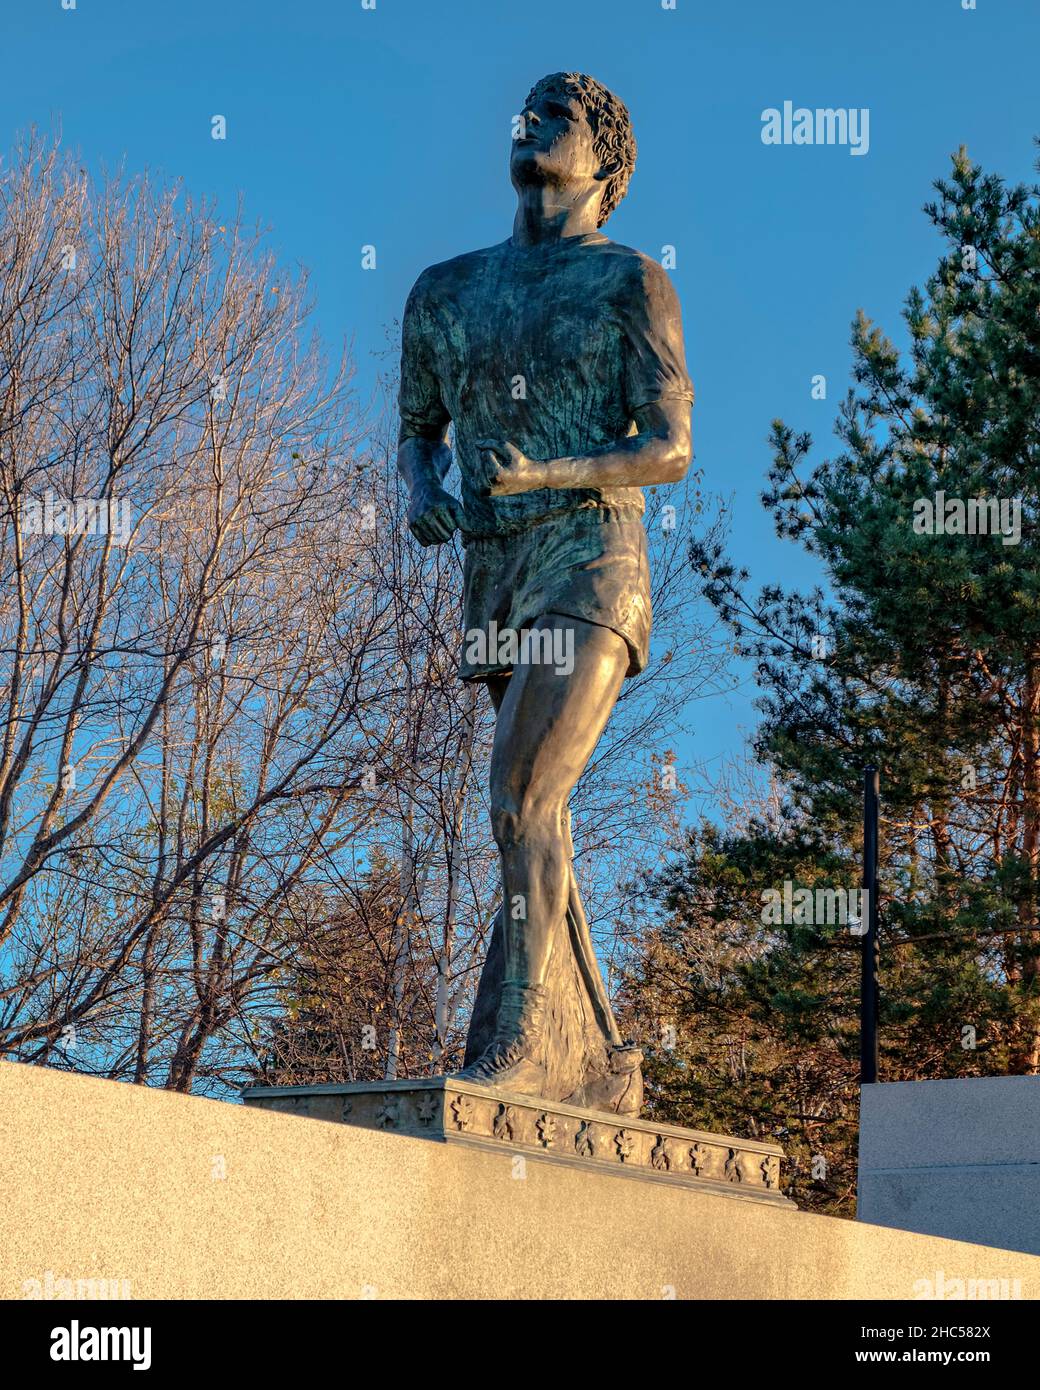 Terry Fox Monument in der Nähe von Thunder Bay, Ontario, wo Terry aufgrund der Rückkehr seines Krebses gezwungen war, seinen Marathon der Hoffnung zu beenden. Stockfoto